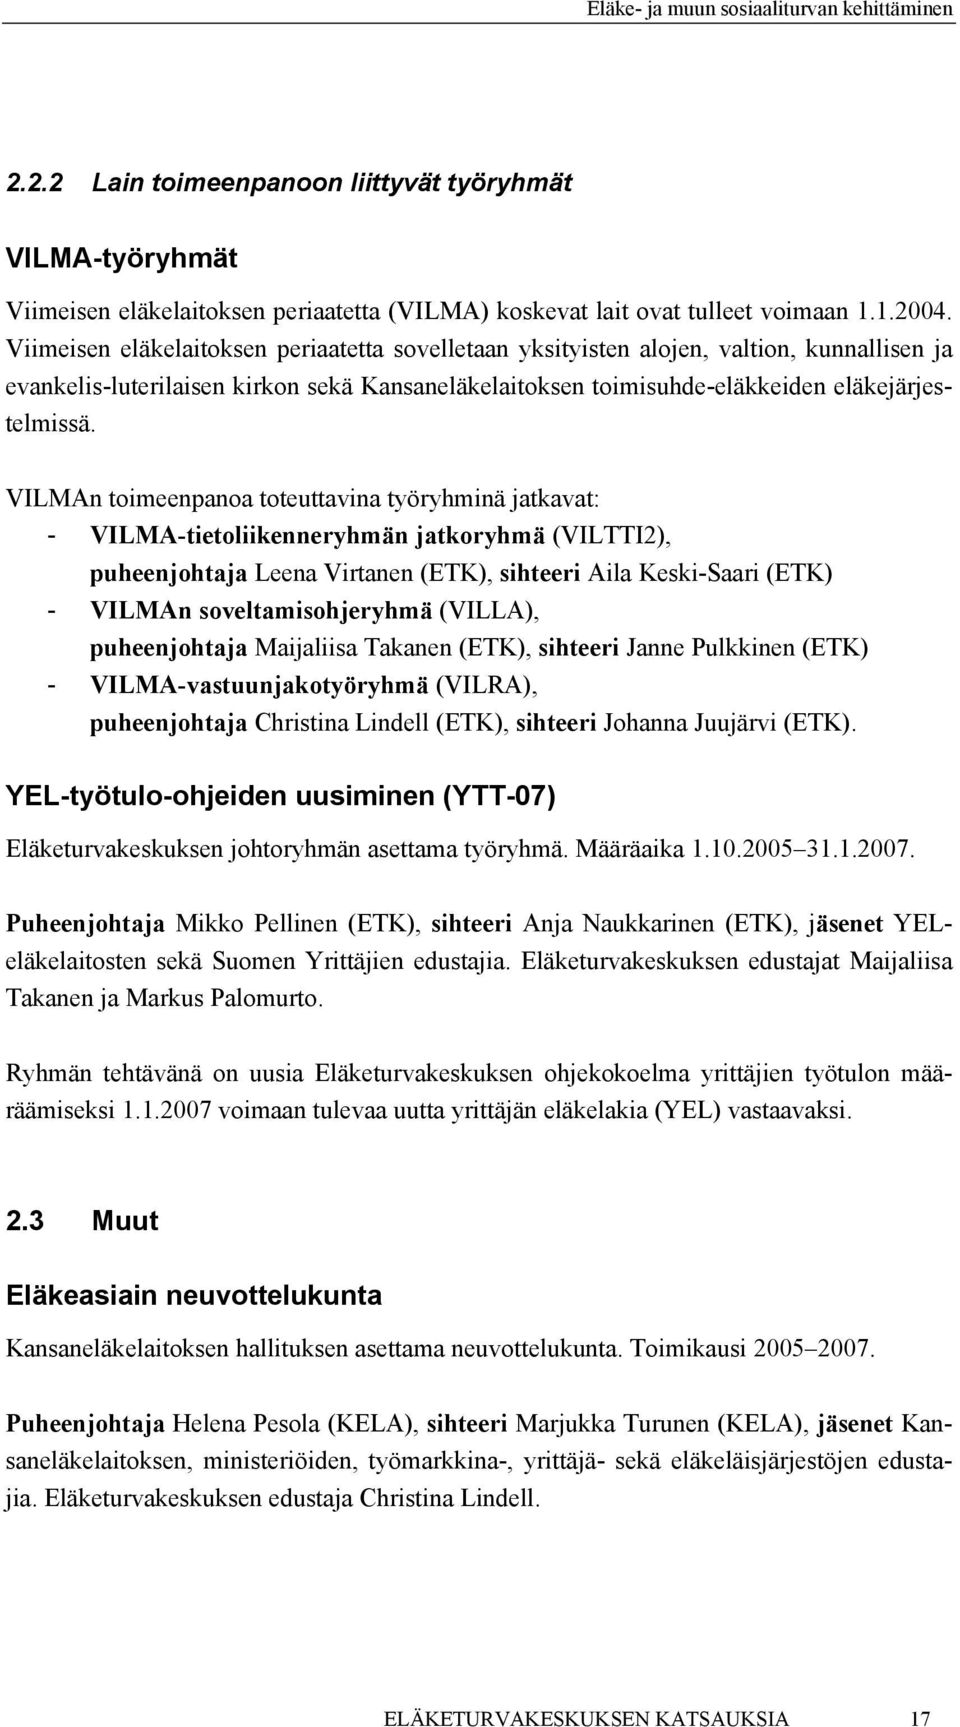 VILMAn toimeenpanoa toteuttavina työryhminä jatkavat: - VILMA-tietoliikenneryhmän jatkoryhmä (VILTTI2), puheenjohtaja Leena Virtanen (ETK), sihteeri Aila Keski-Saari (ETK) - VILMAn